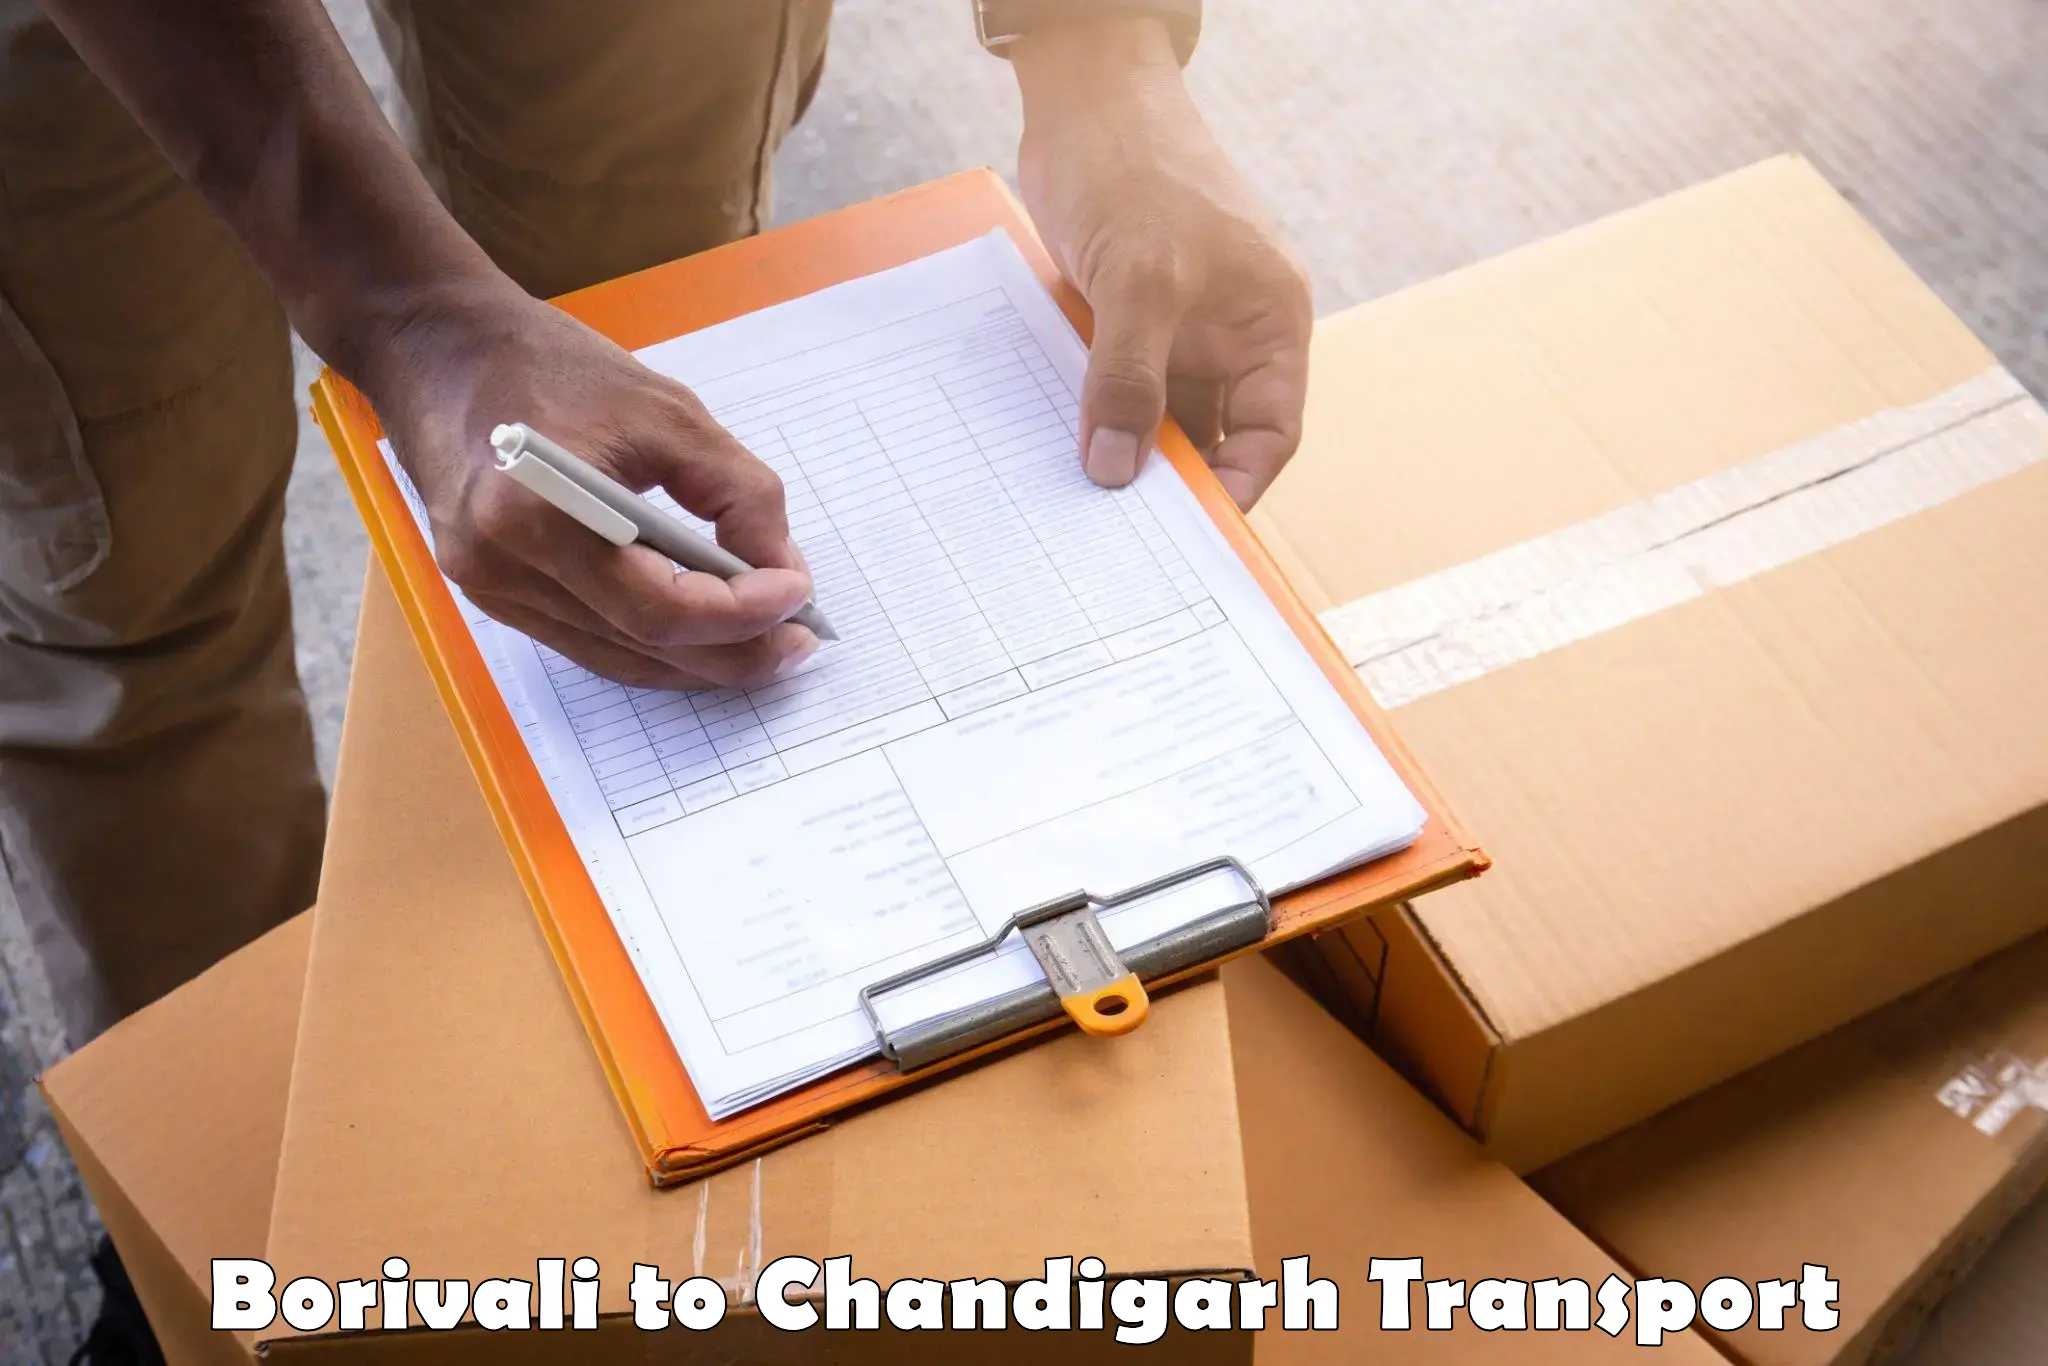 Container transport service Borivali to Chandigarh